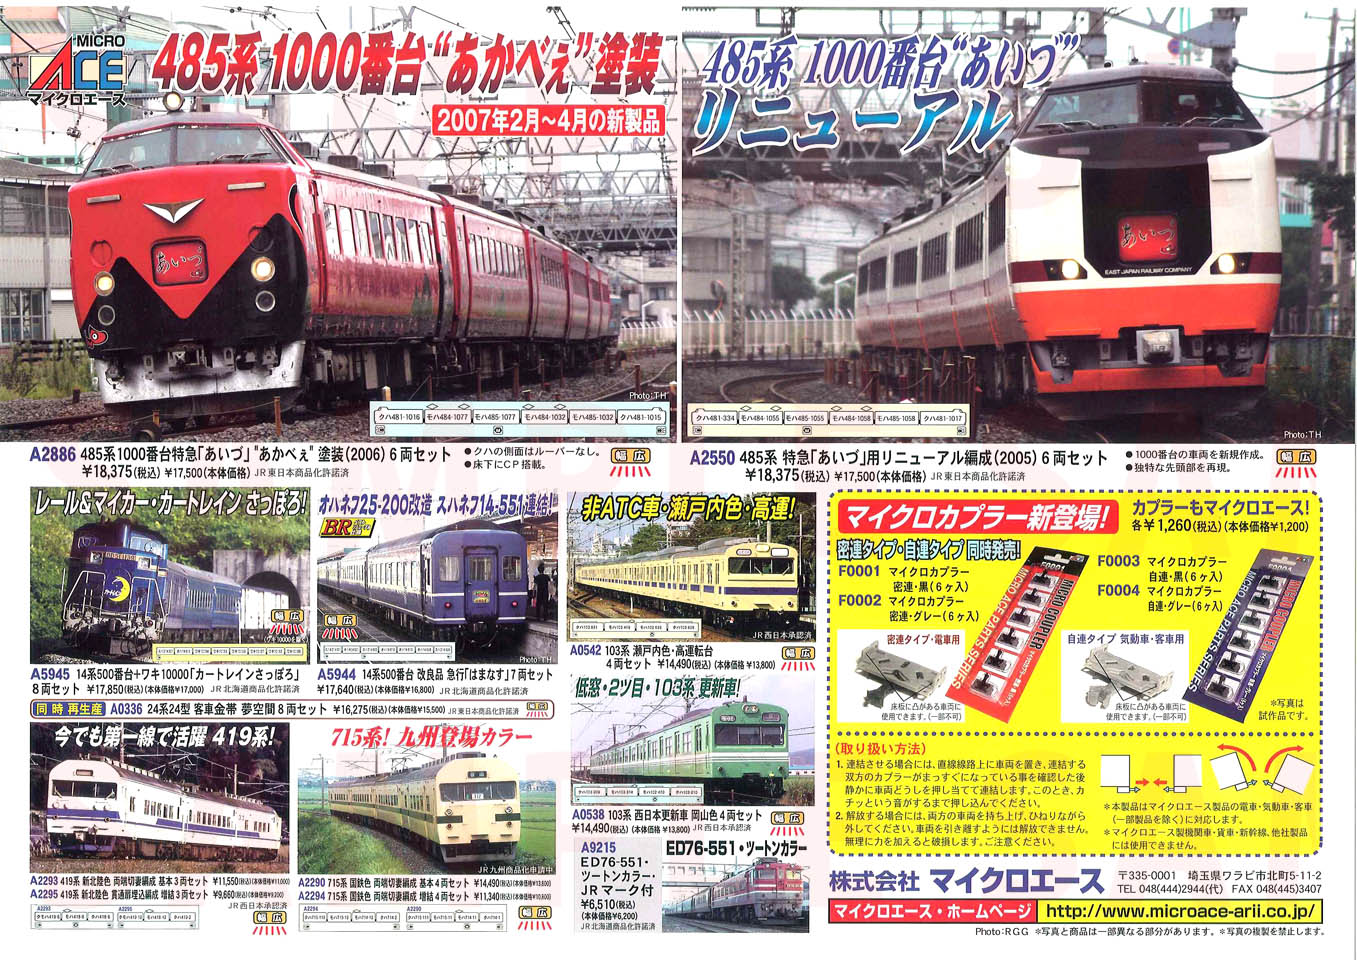 485系1000番台 特急「あいづ」 あかべぇ塗装 2006 (6両セット) (鉄道 